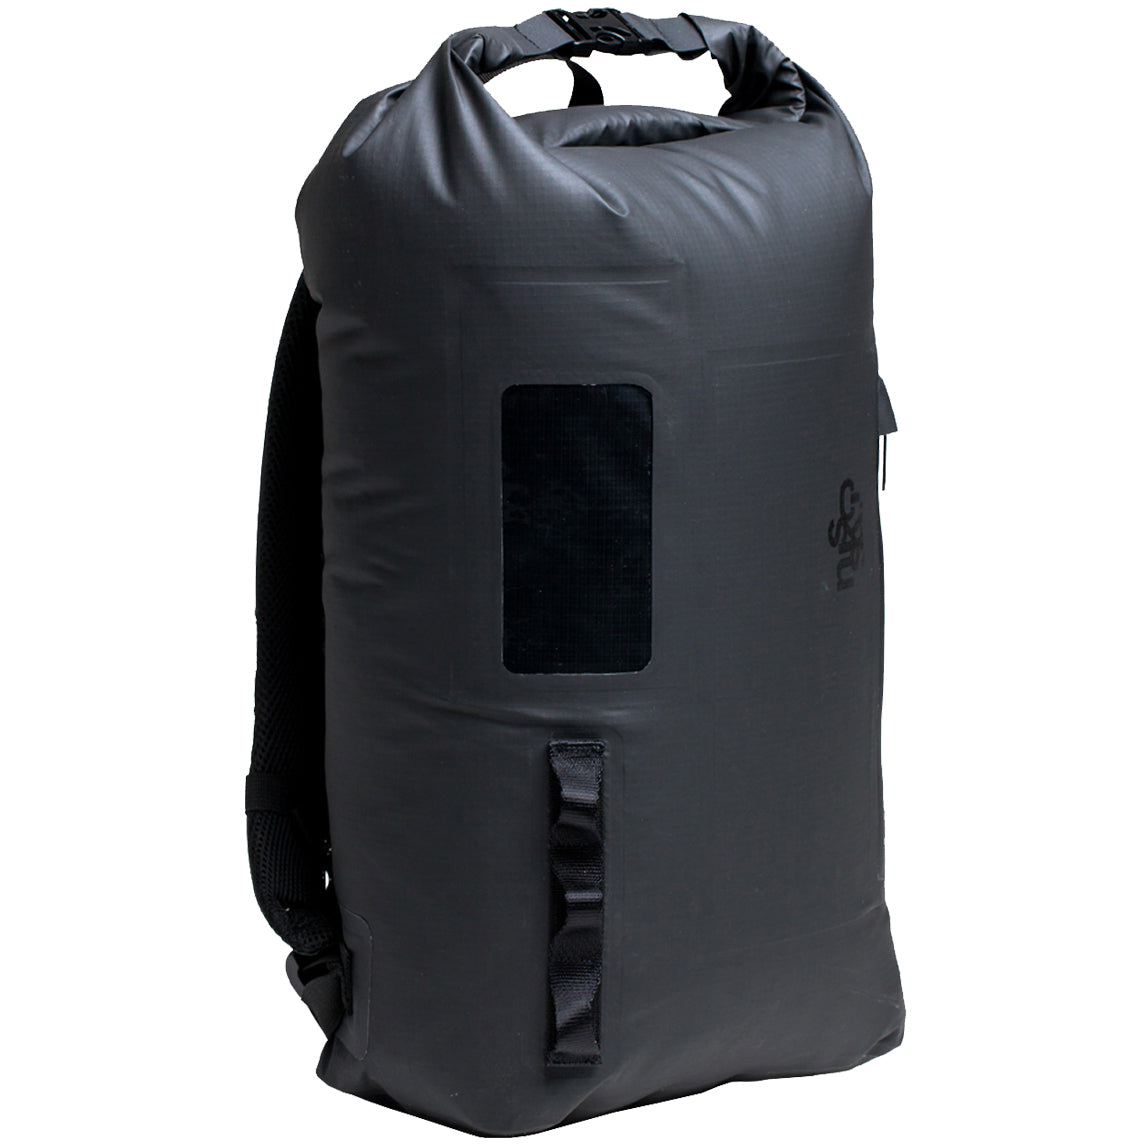 C-Skins Session 22L Dry Bag Backpack